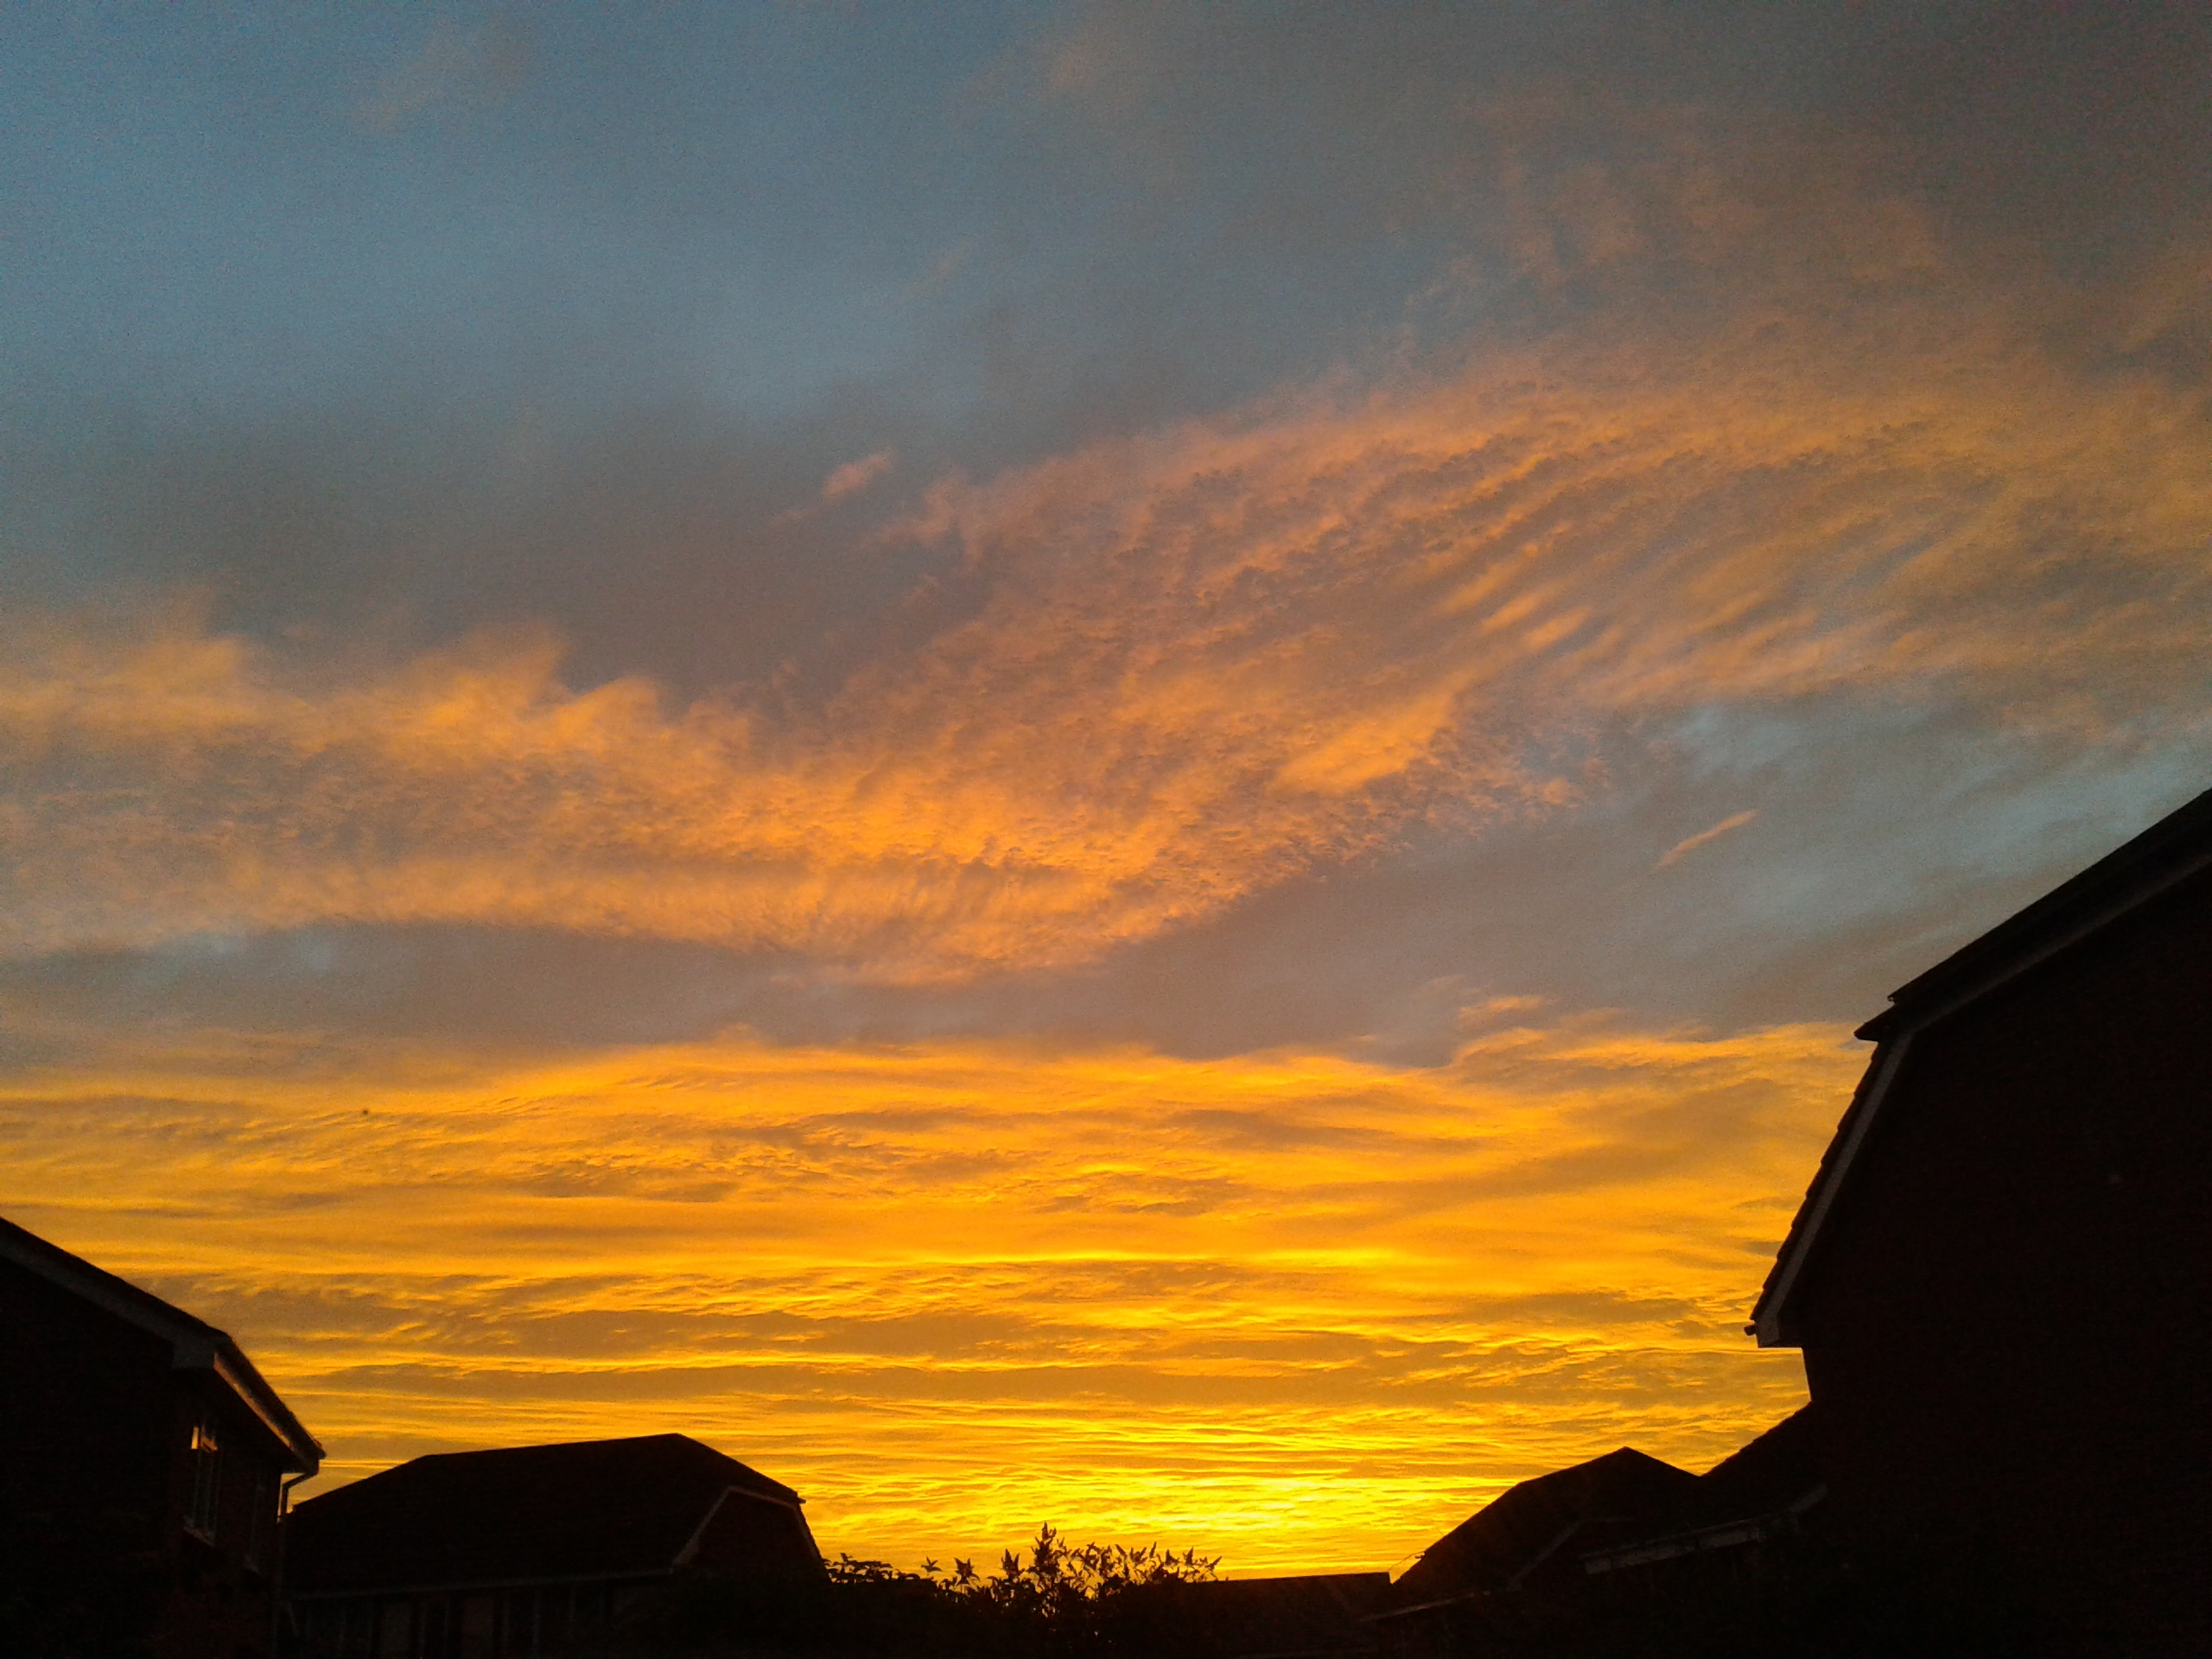 sunrise over Herefordshire in September